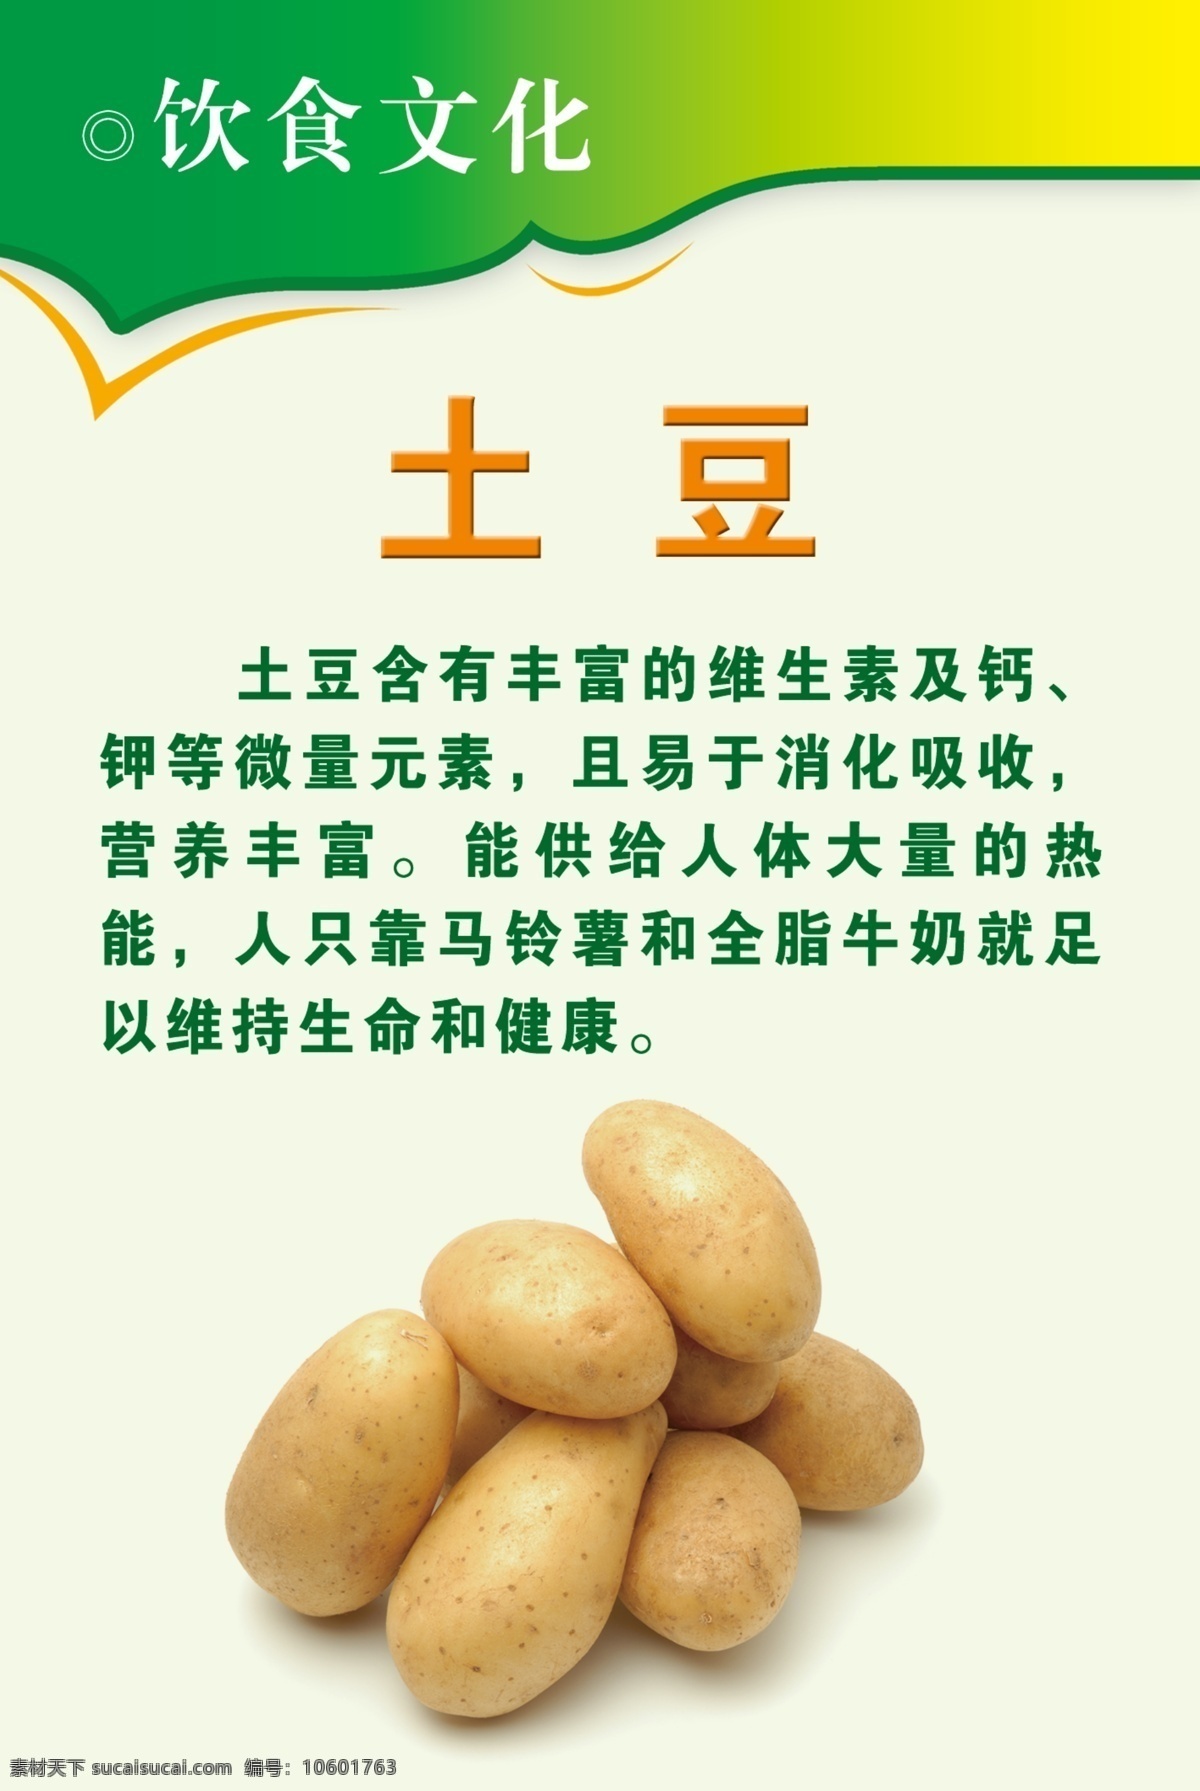 桌签 生动细致 描述土豆 营养成分 对身体的好处 土豆中含有 维生素 钙 钾等微量元素